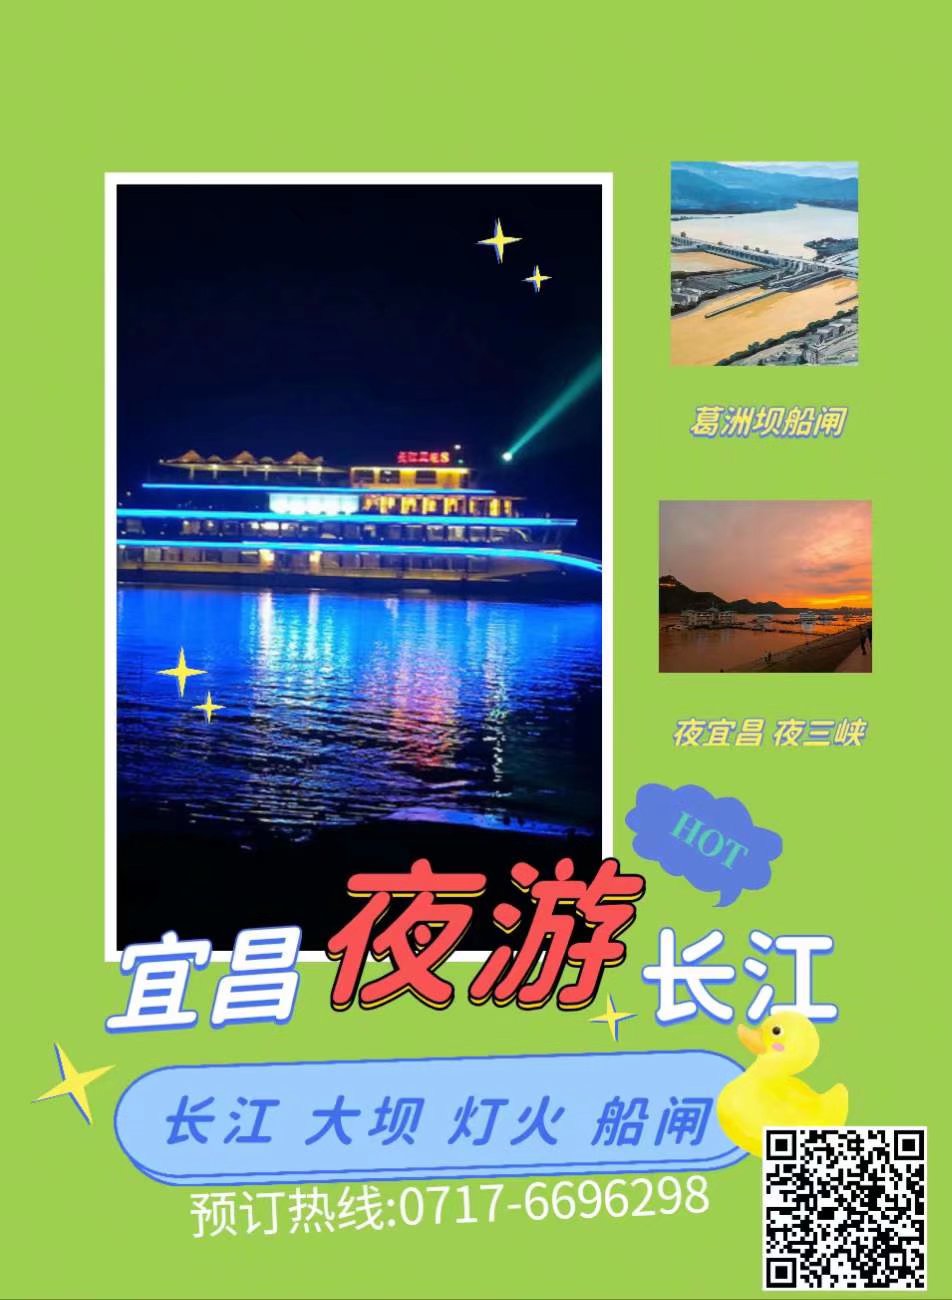 2022年4月30日起宜昌长江夜游船价格调整欢迎乘船体验夜三峡过船闸